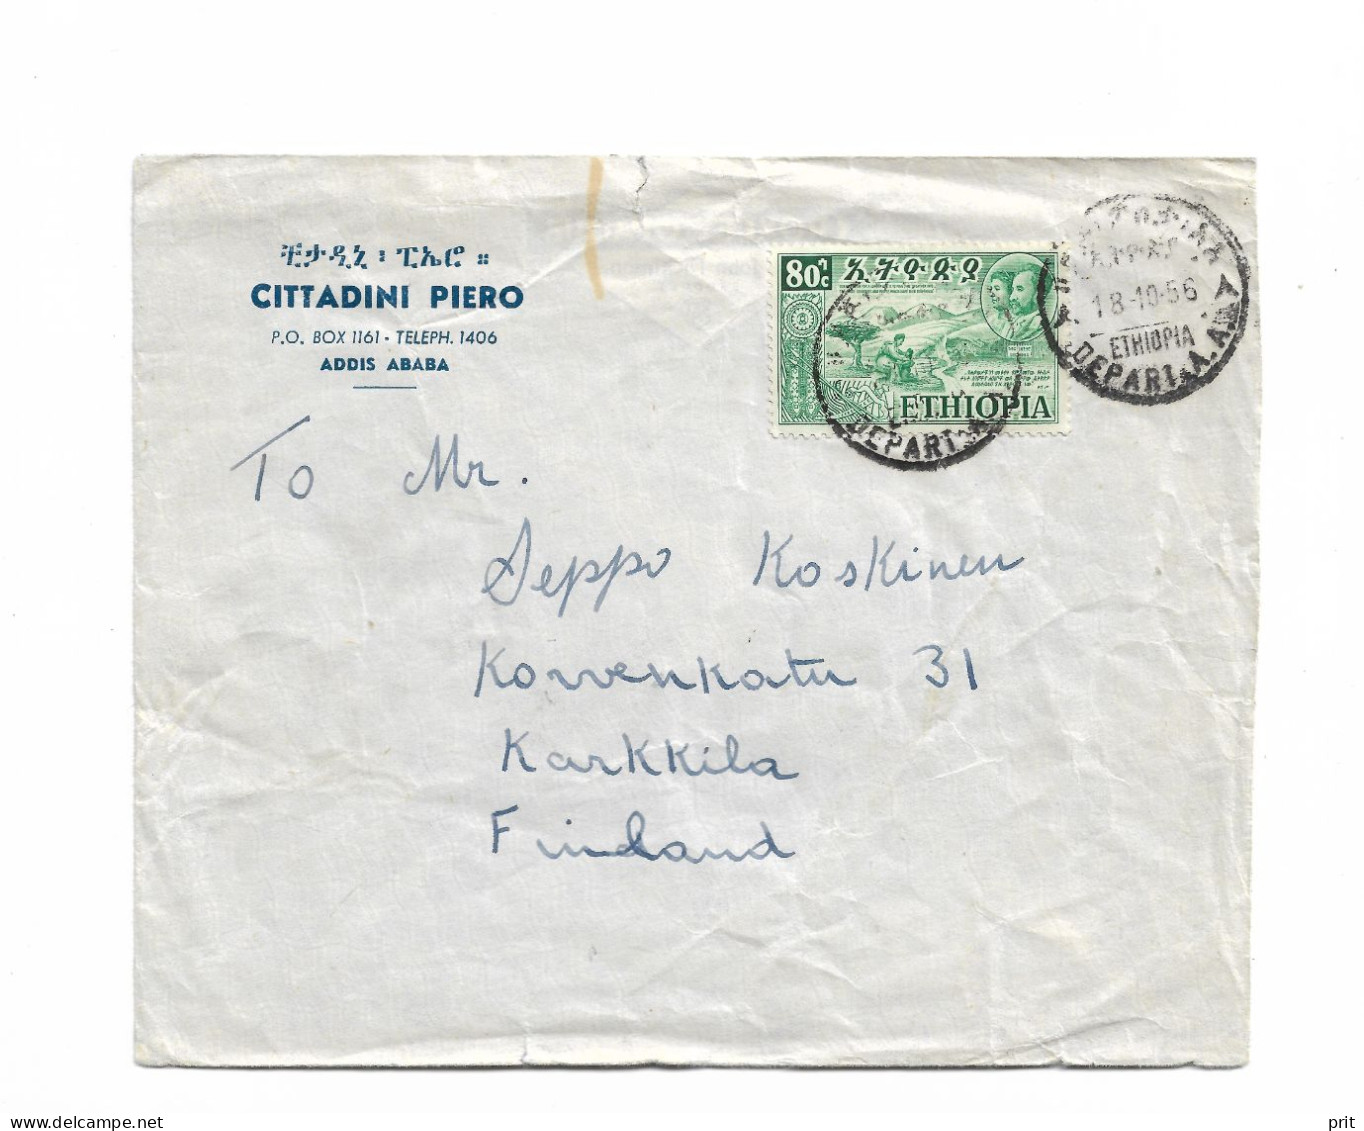 Addis Ababa Ethiopia Cover To Karkkila, Finland 1956 - Ethiopie